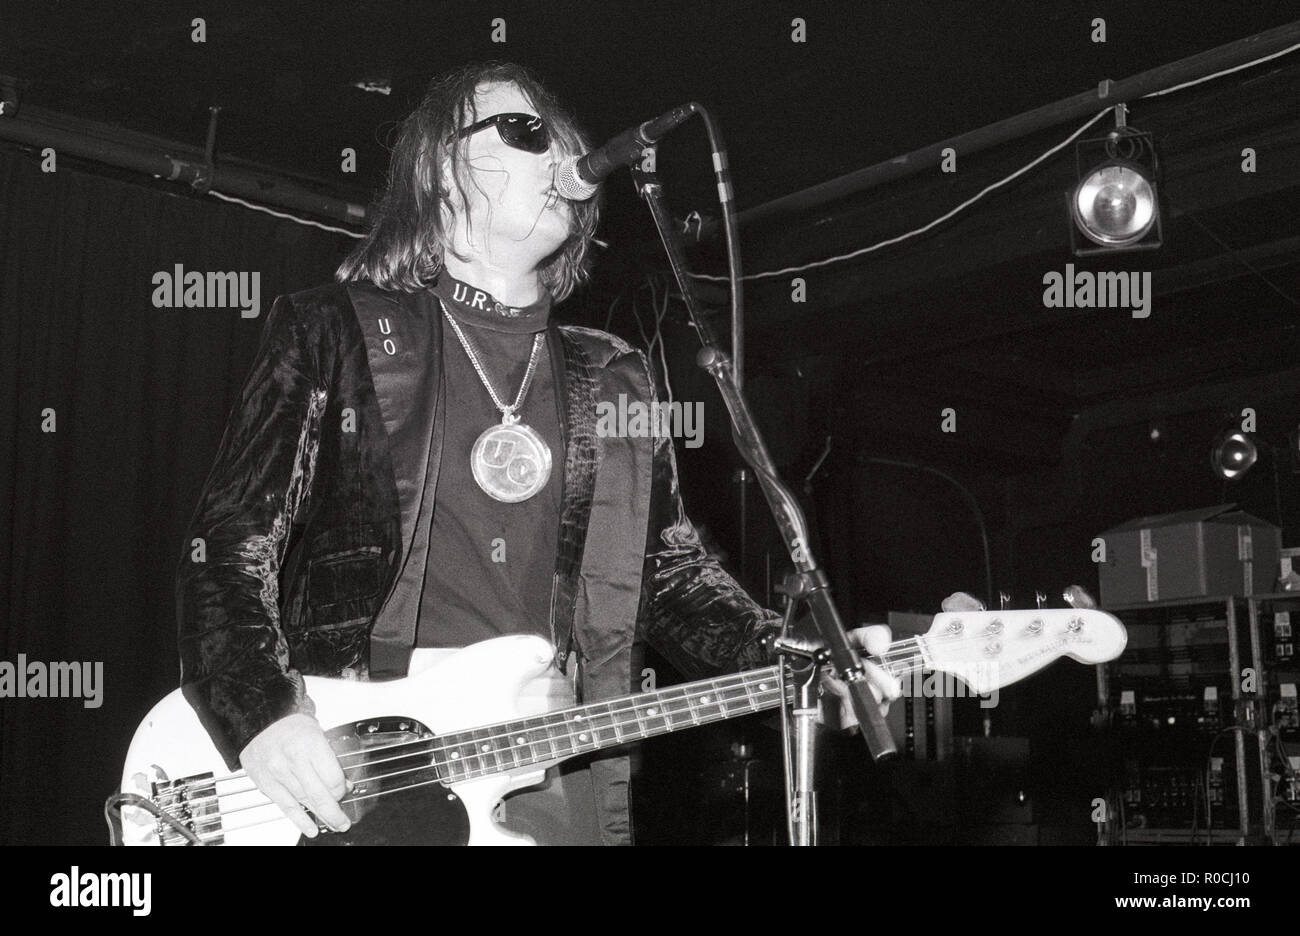 Eddie 'King' Roeser von der alternativen Rockband Drang Overkill, die am 12. April 1991 in The Venue, New Cross, London, auftrat. Stockfoto